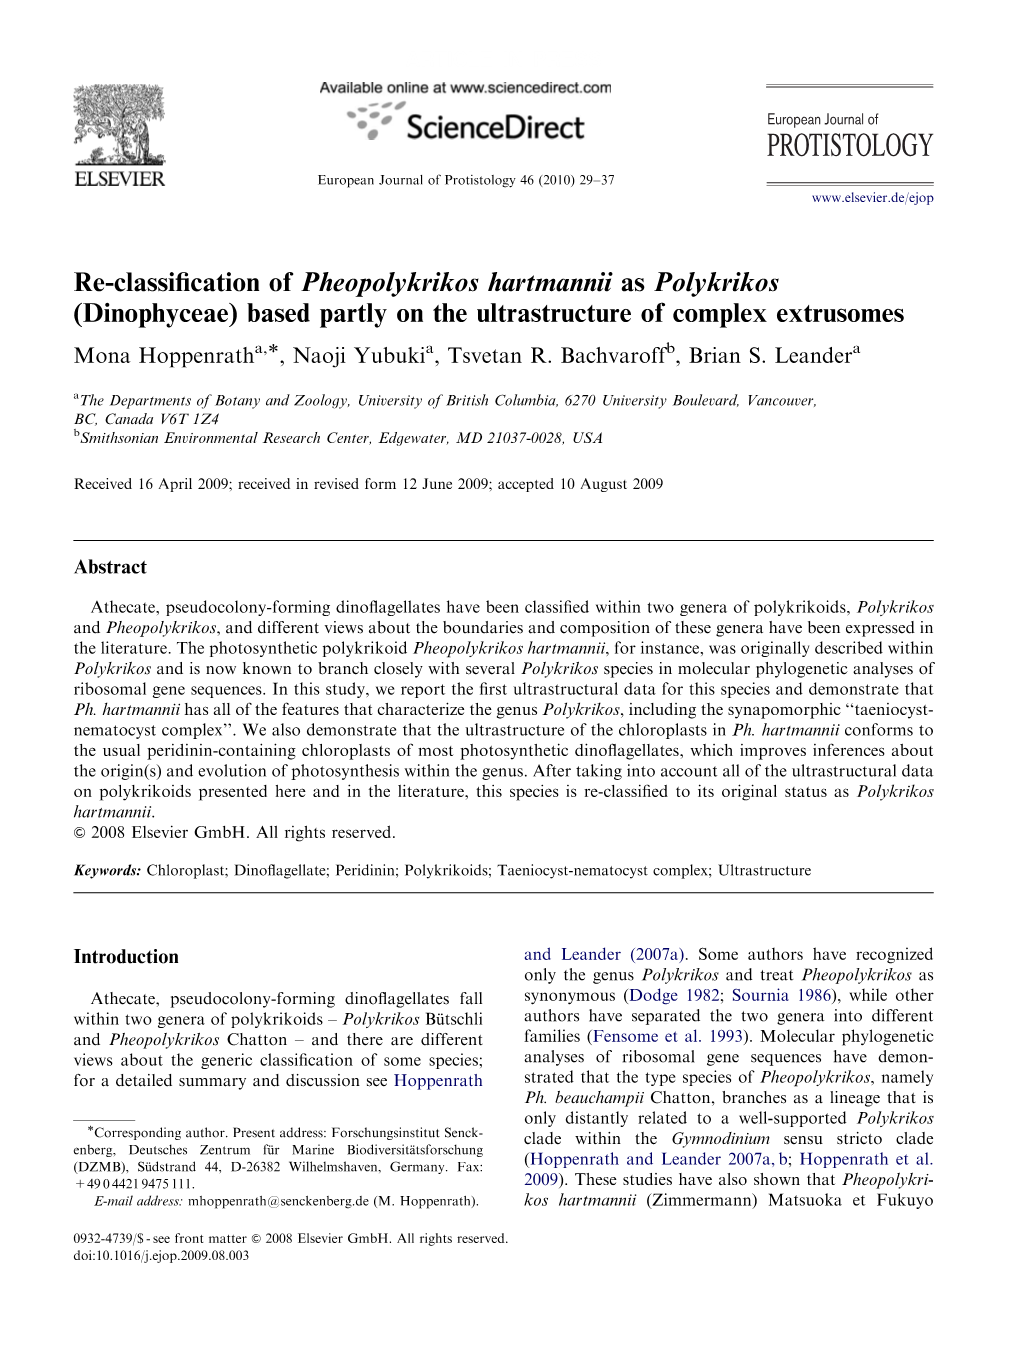 Re-Classification of Pheopolykrikos Hartmannii As Polykrikos